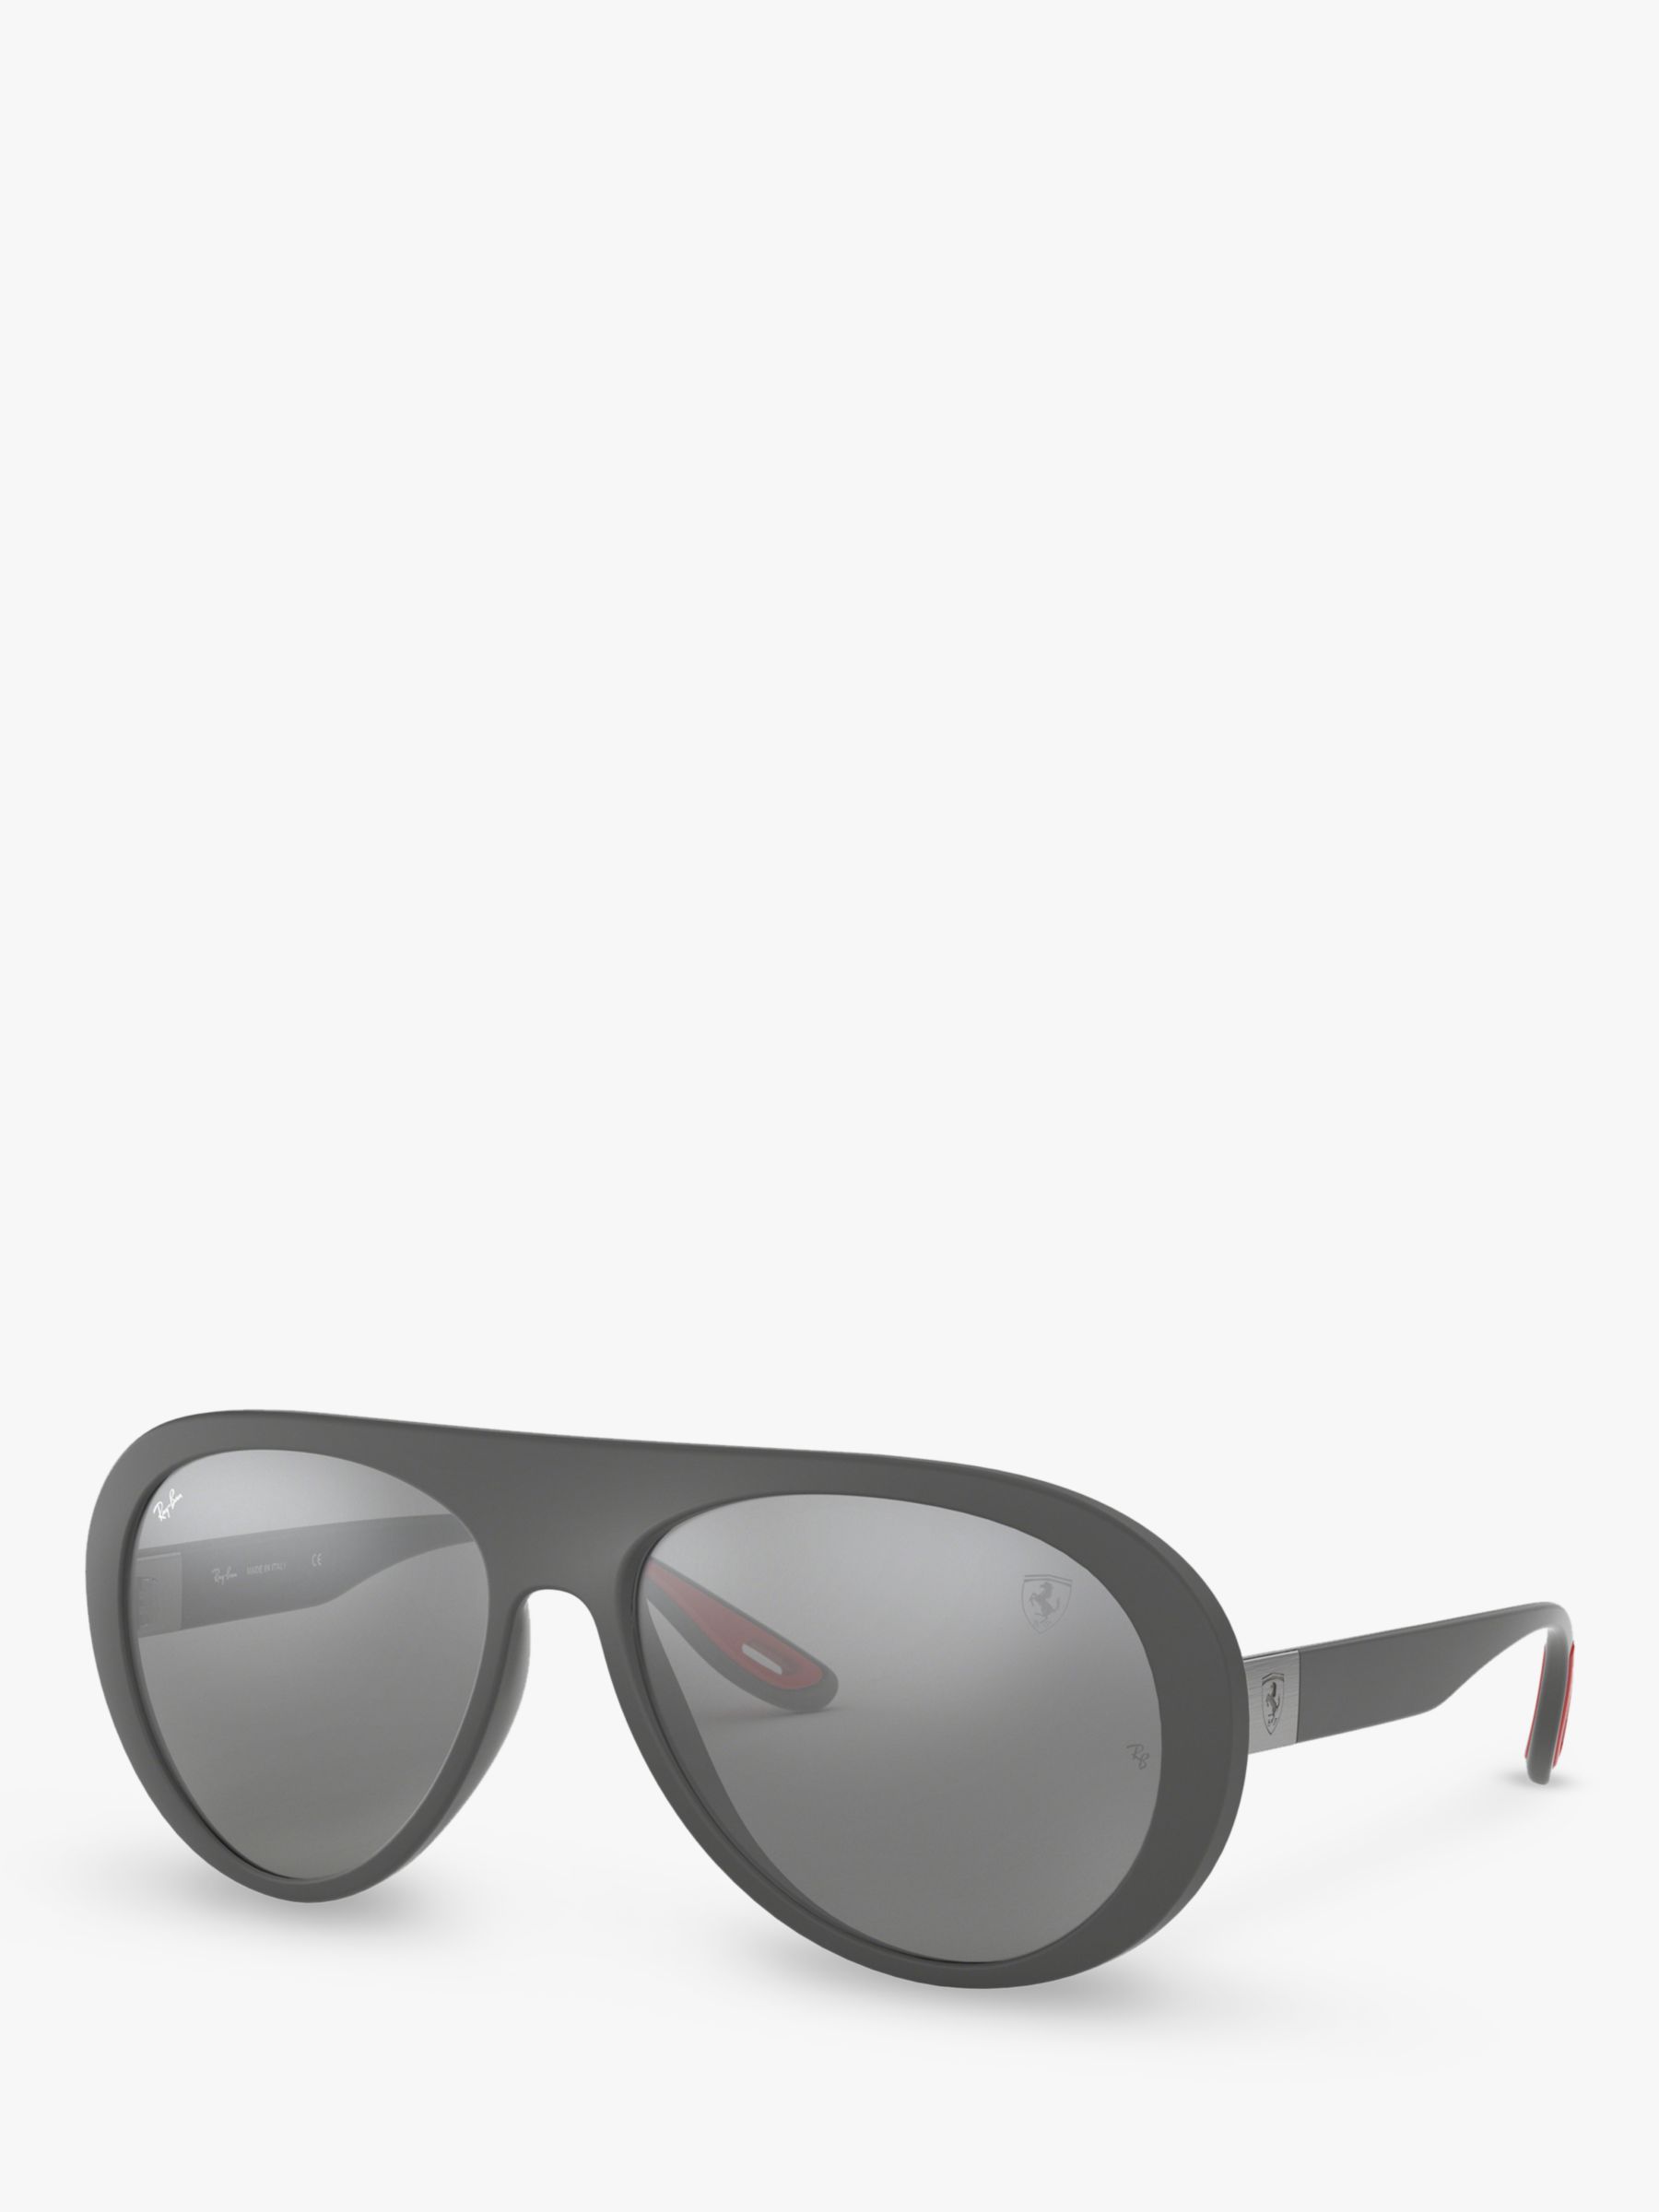 RB4310M Женские солнцезащитные очки-авиаторы Scuderia Ferrari Collection Ray-Ban, матовый серый/зеркальное серебро